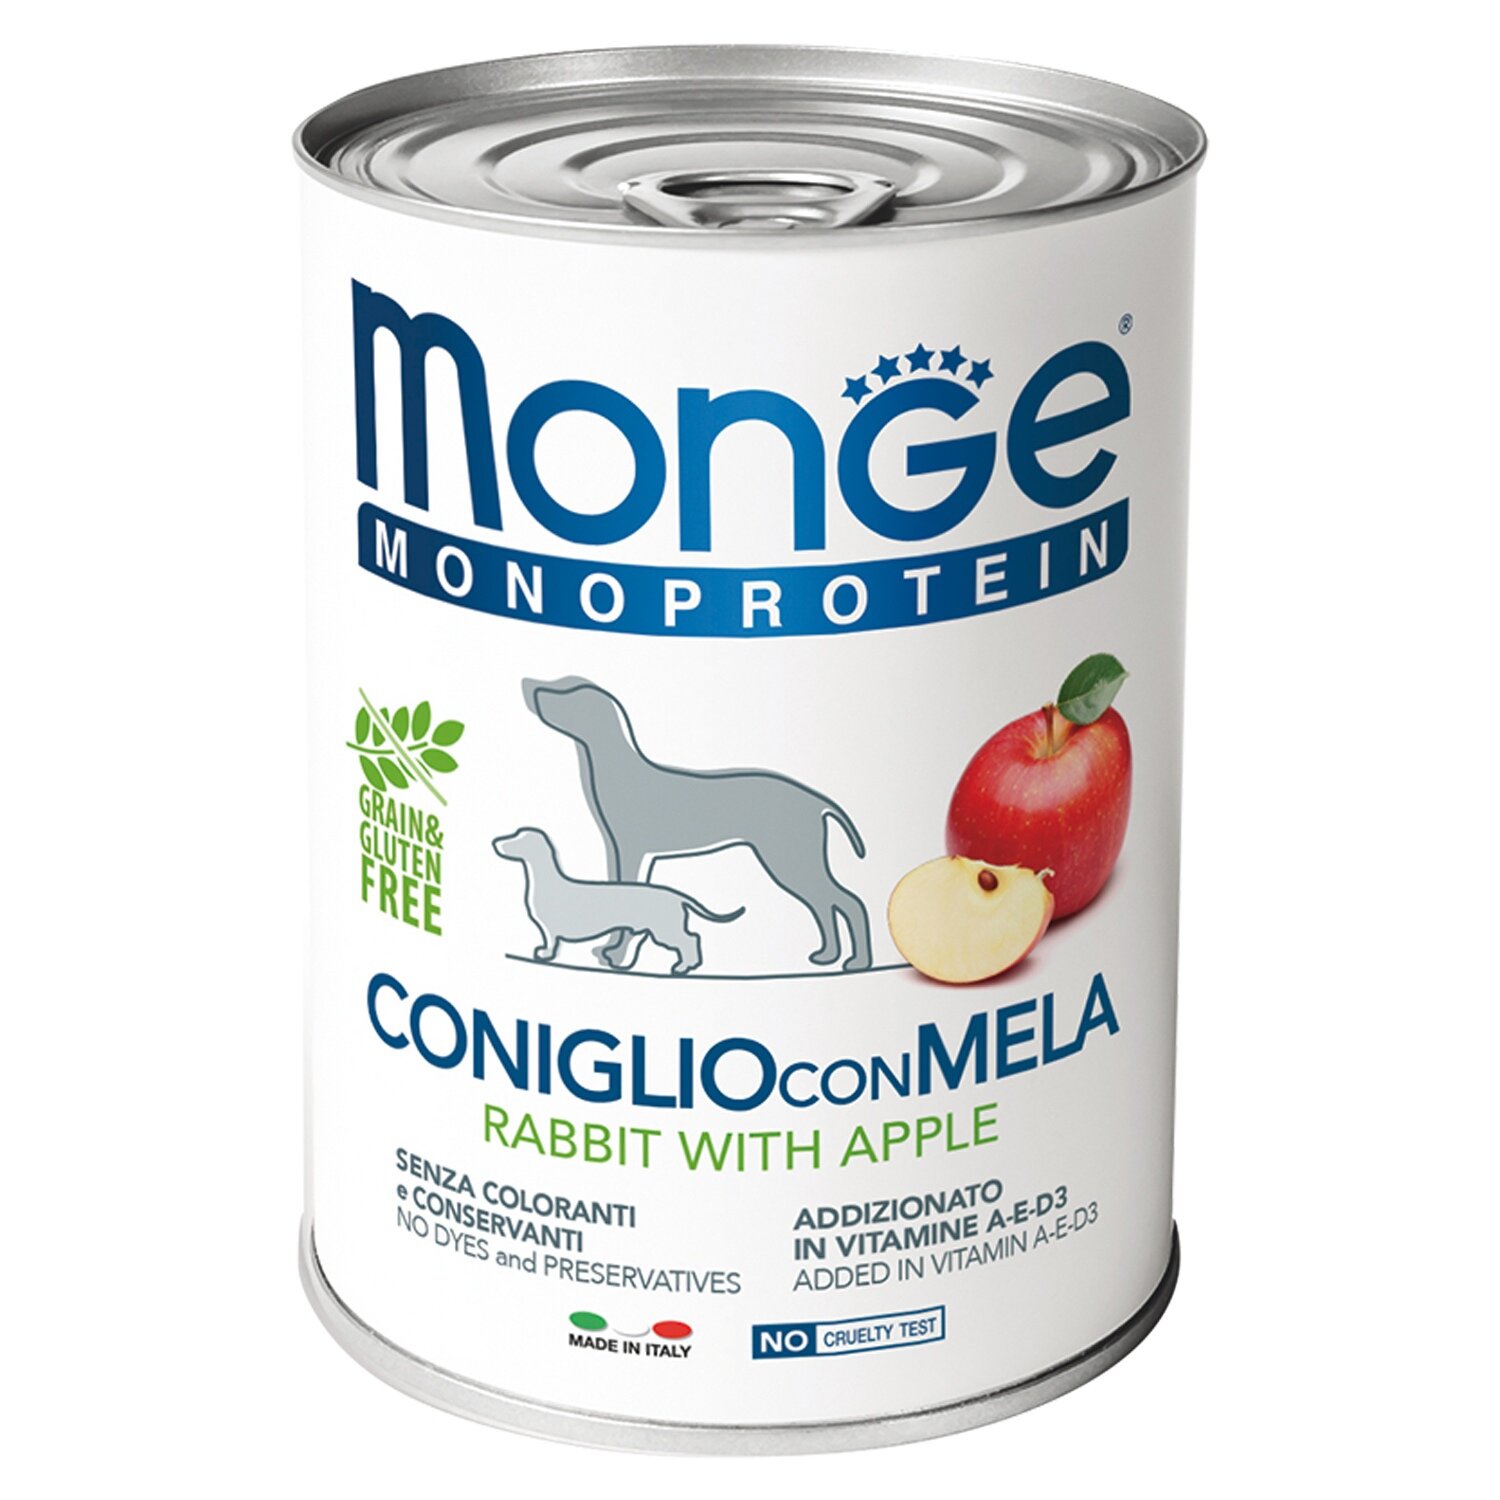 Monge Dog Monoprotein Fruits Влажный корм для собак, Кролик, Рис и Яблоки 400г